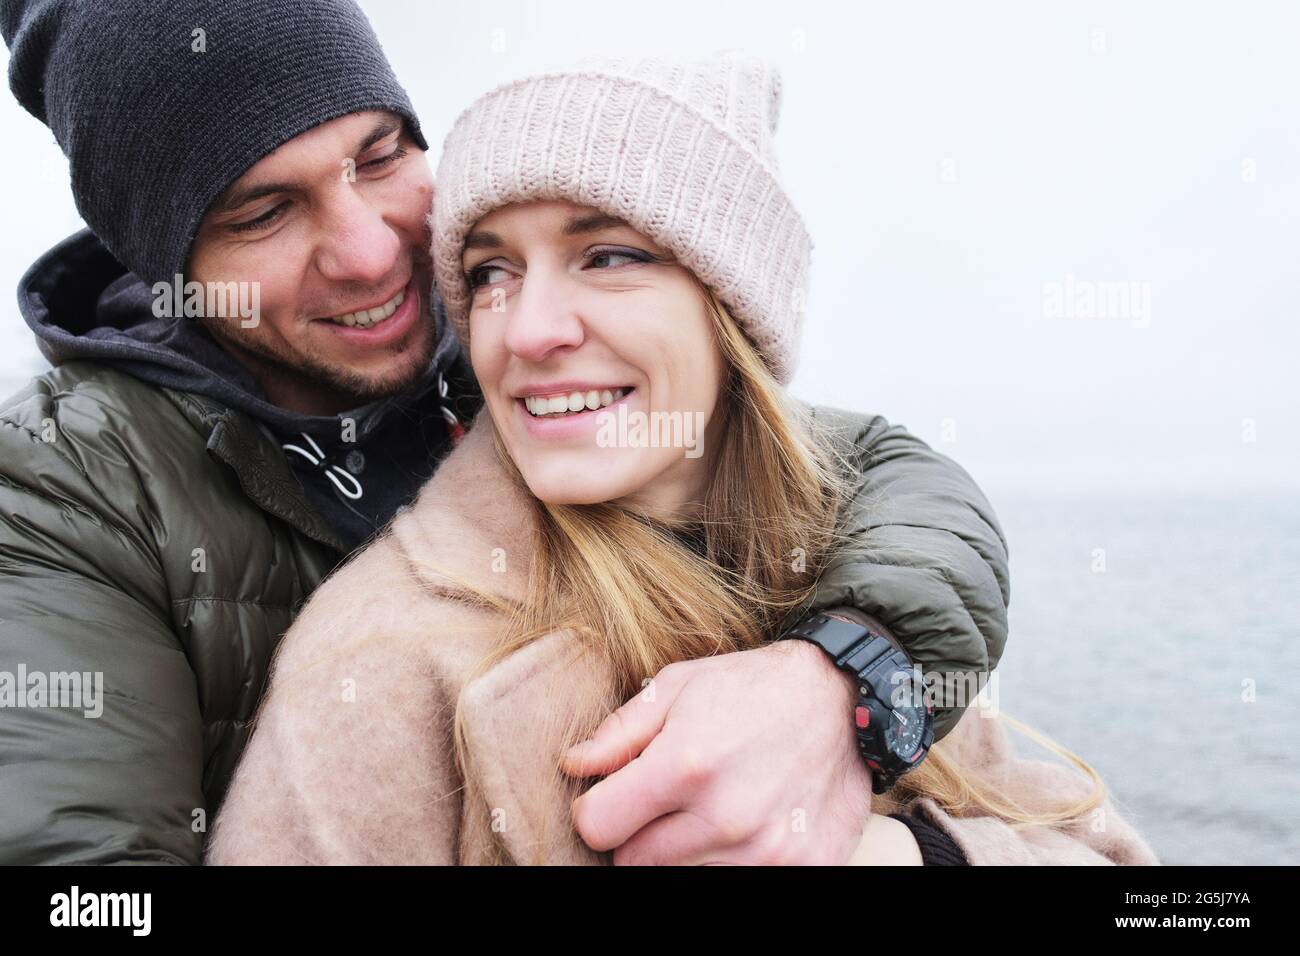 Glücklicher Ehemann und Ehefrau lächeln und Ehemann umarmt Frau zärtlich - ein paar junge Leute, die Spaß im Freien haben - Mann und Frau zusammen als guter Freund Stockfoto